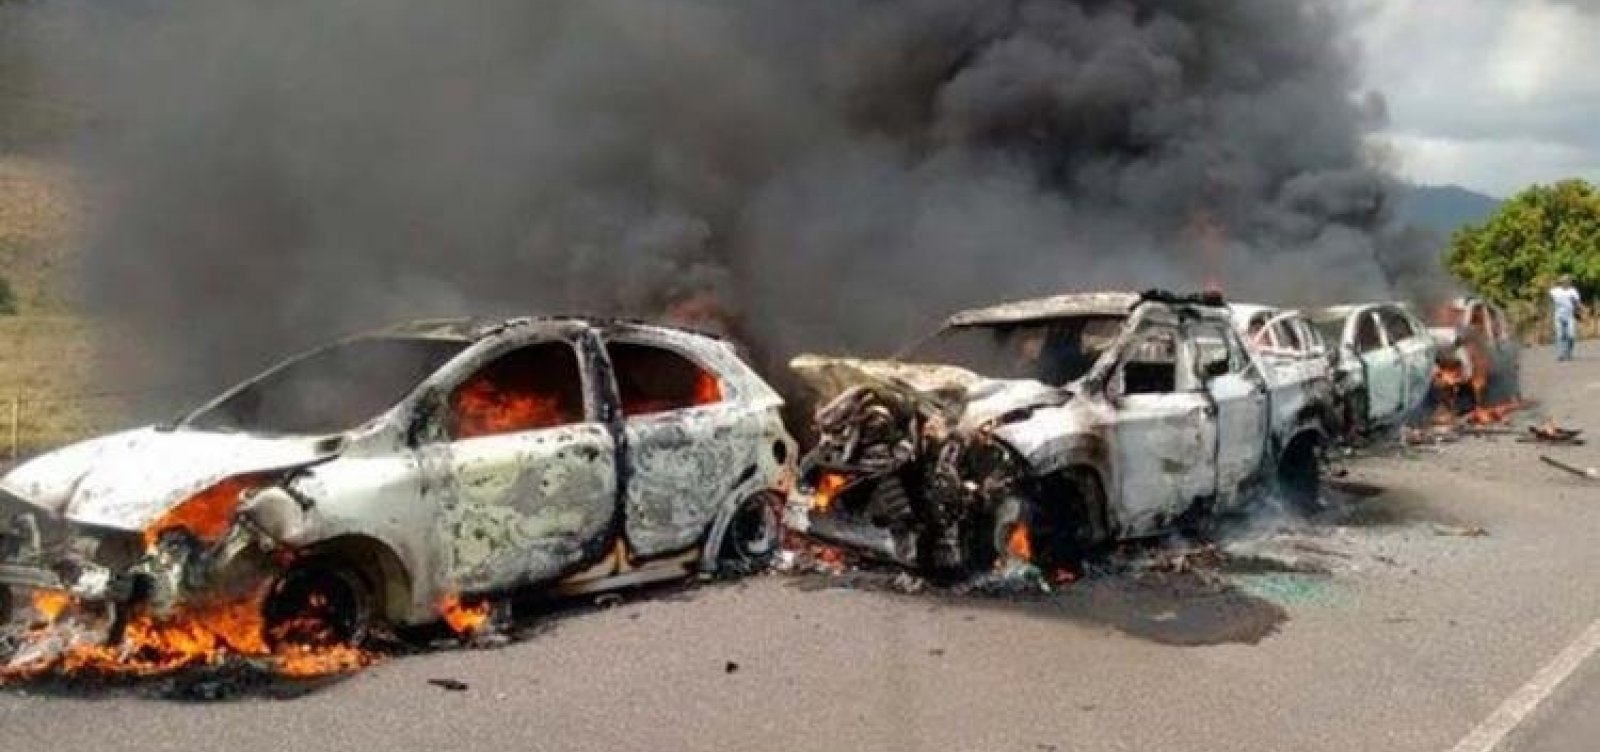 Engavetamento com carros queimados deixa feridos em Itororó